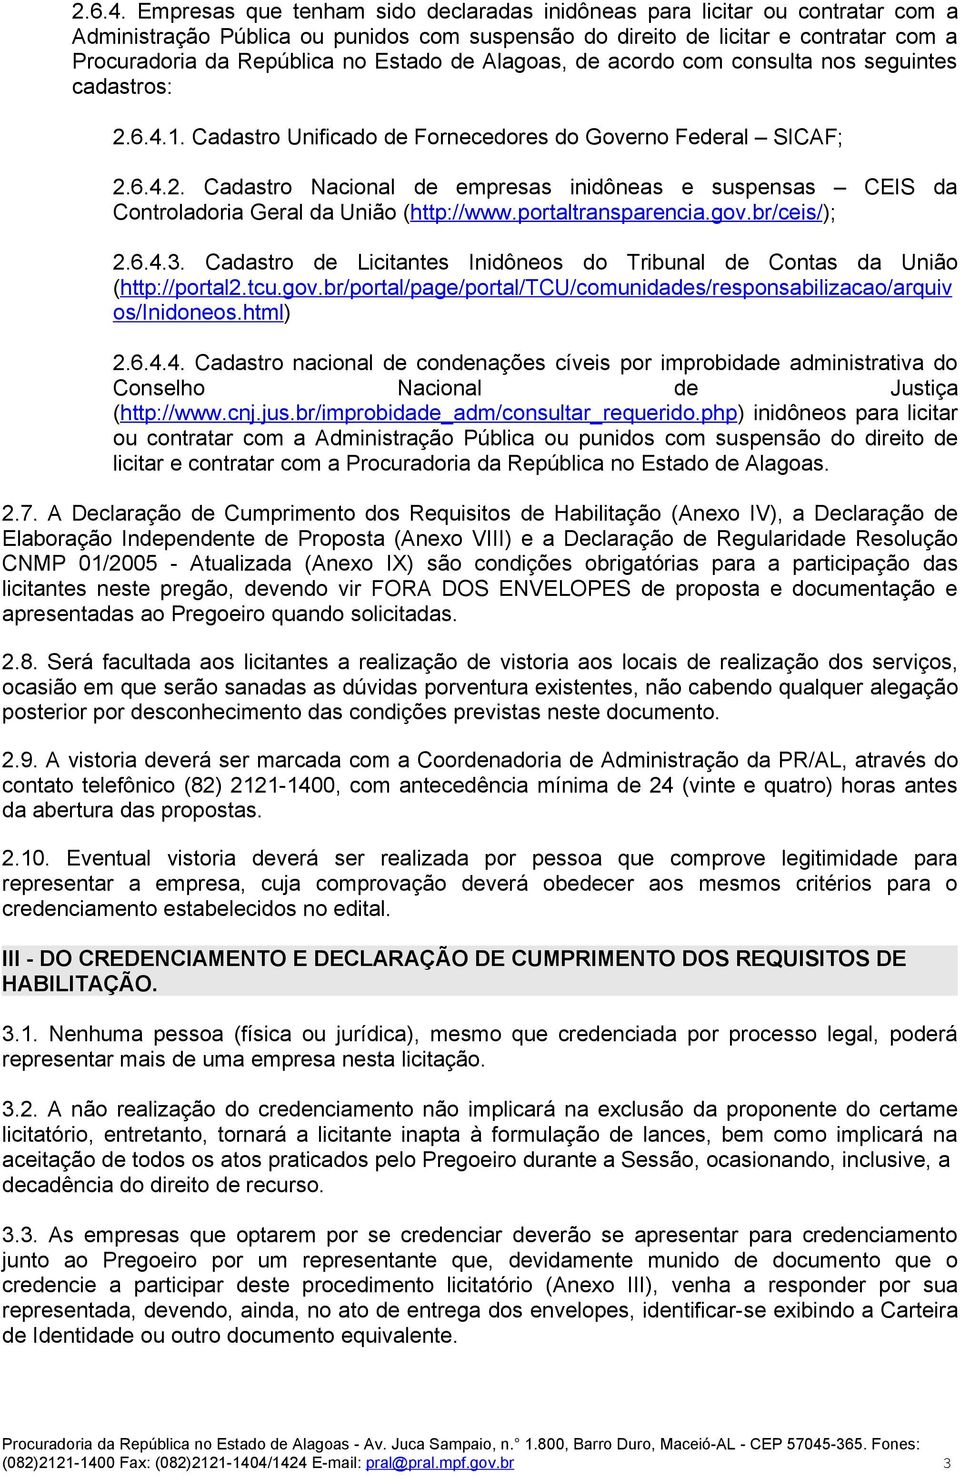 Estado de Alagoas, de acordo com consulta nos seguintes cadastros: 1. Cadastro Unificado de Fornecedores do Governo Federal SICAF; 2.